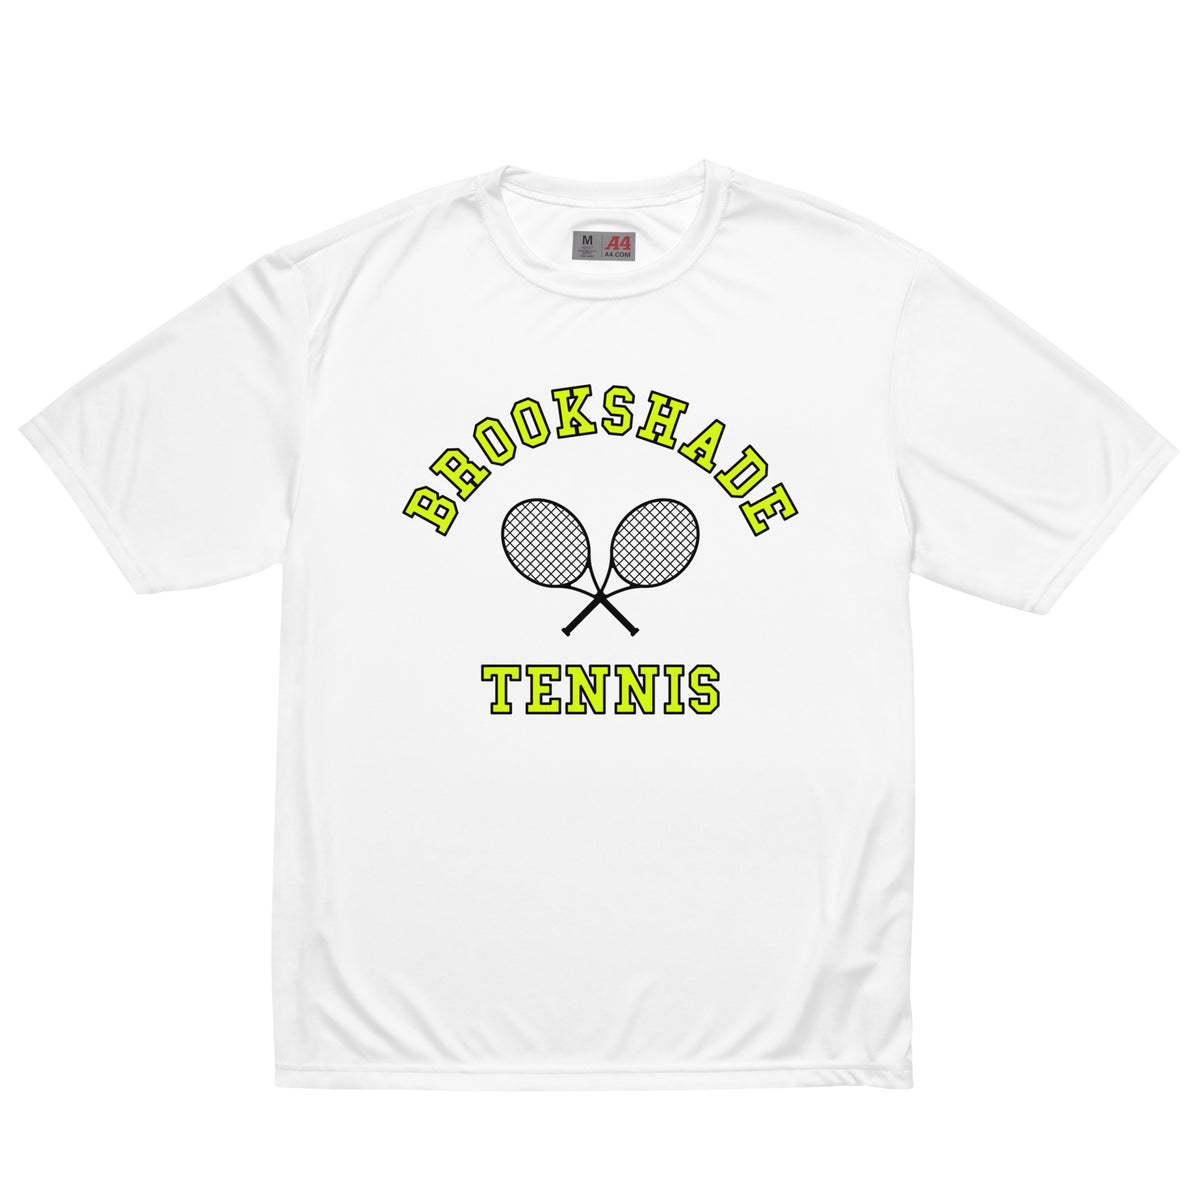 Brookshade Tennis Performance Tee